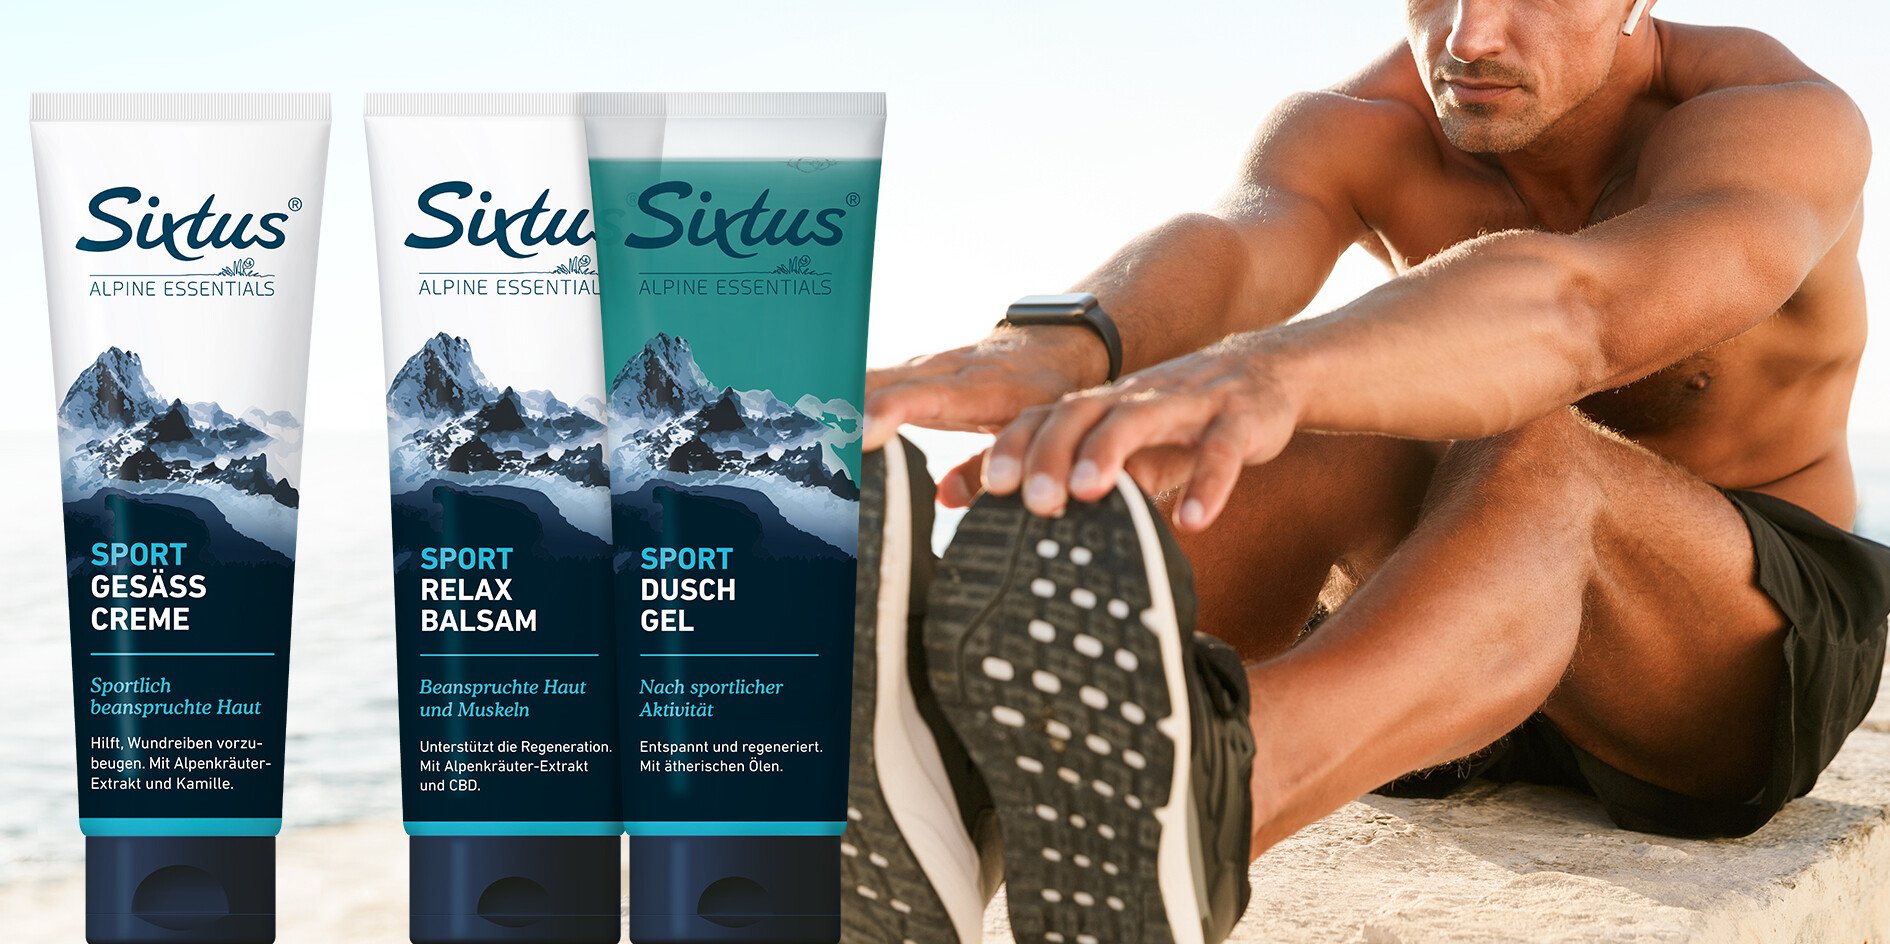 Das Bild von Sixtus Sport-Produkten neben einem trainierenden Sportler ist ein Link zur Produktkategorie Sport.